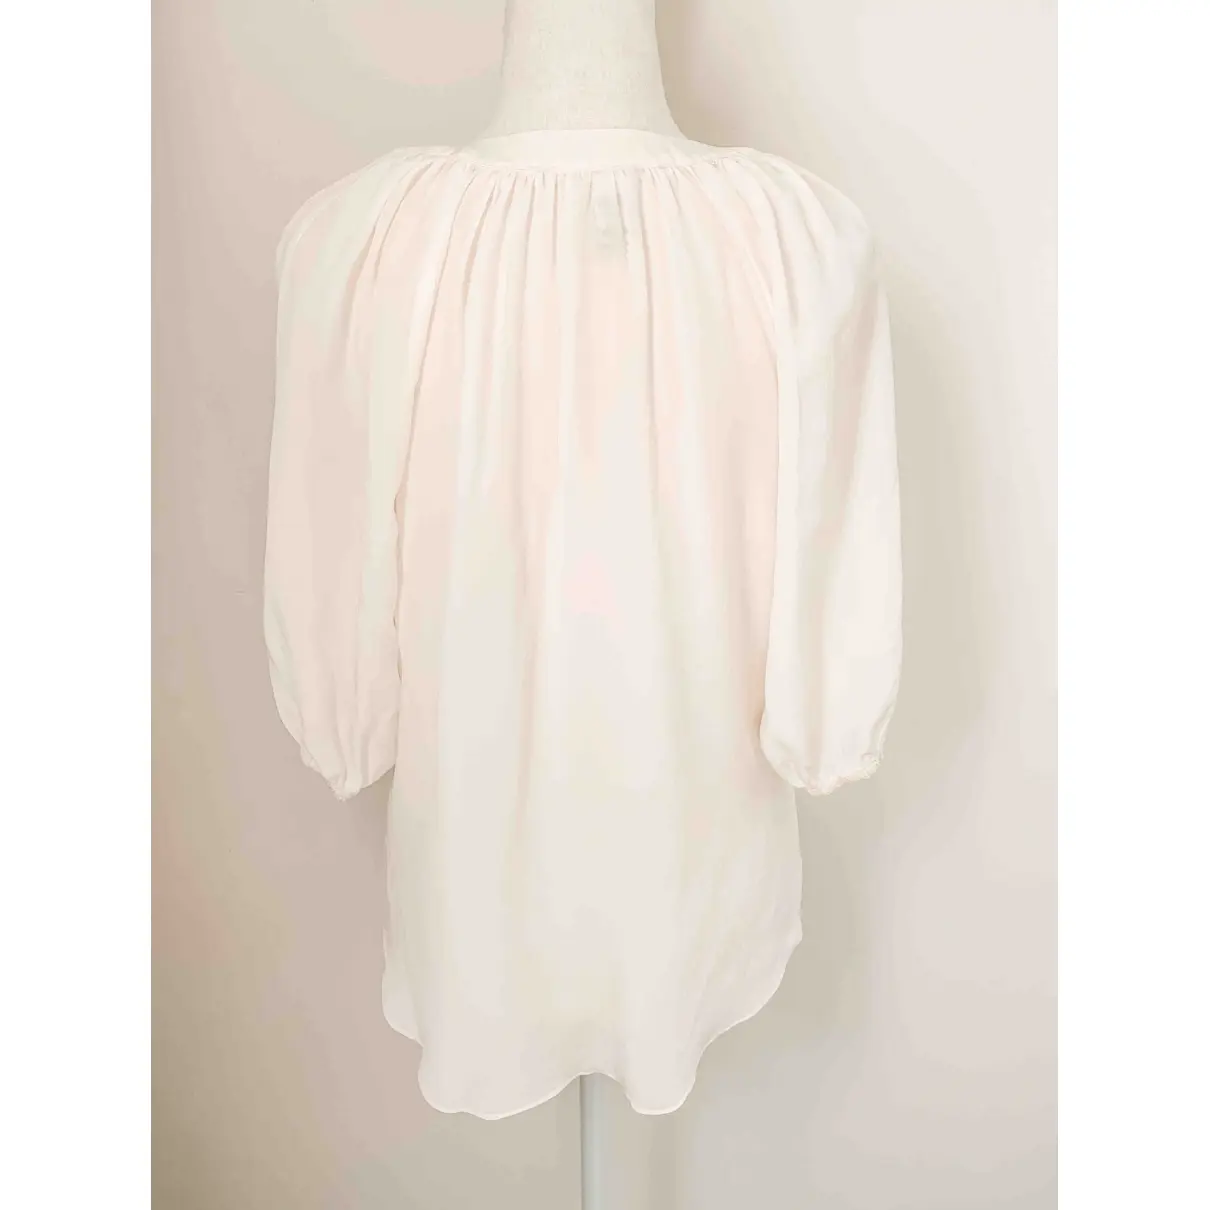 Diane Von Furstenberg Silk blouse for sale